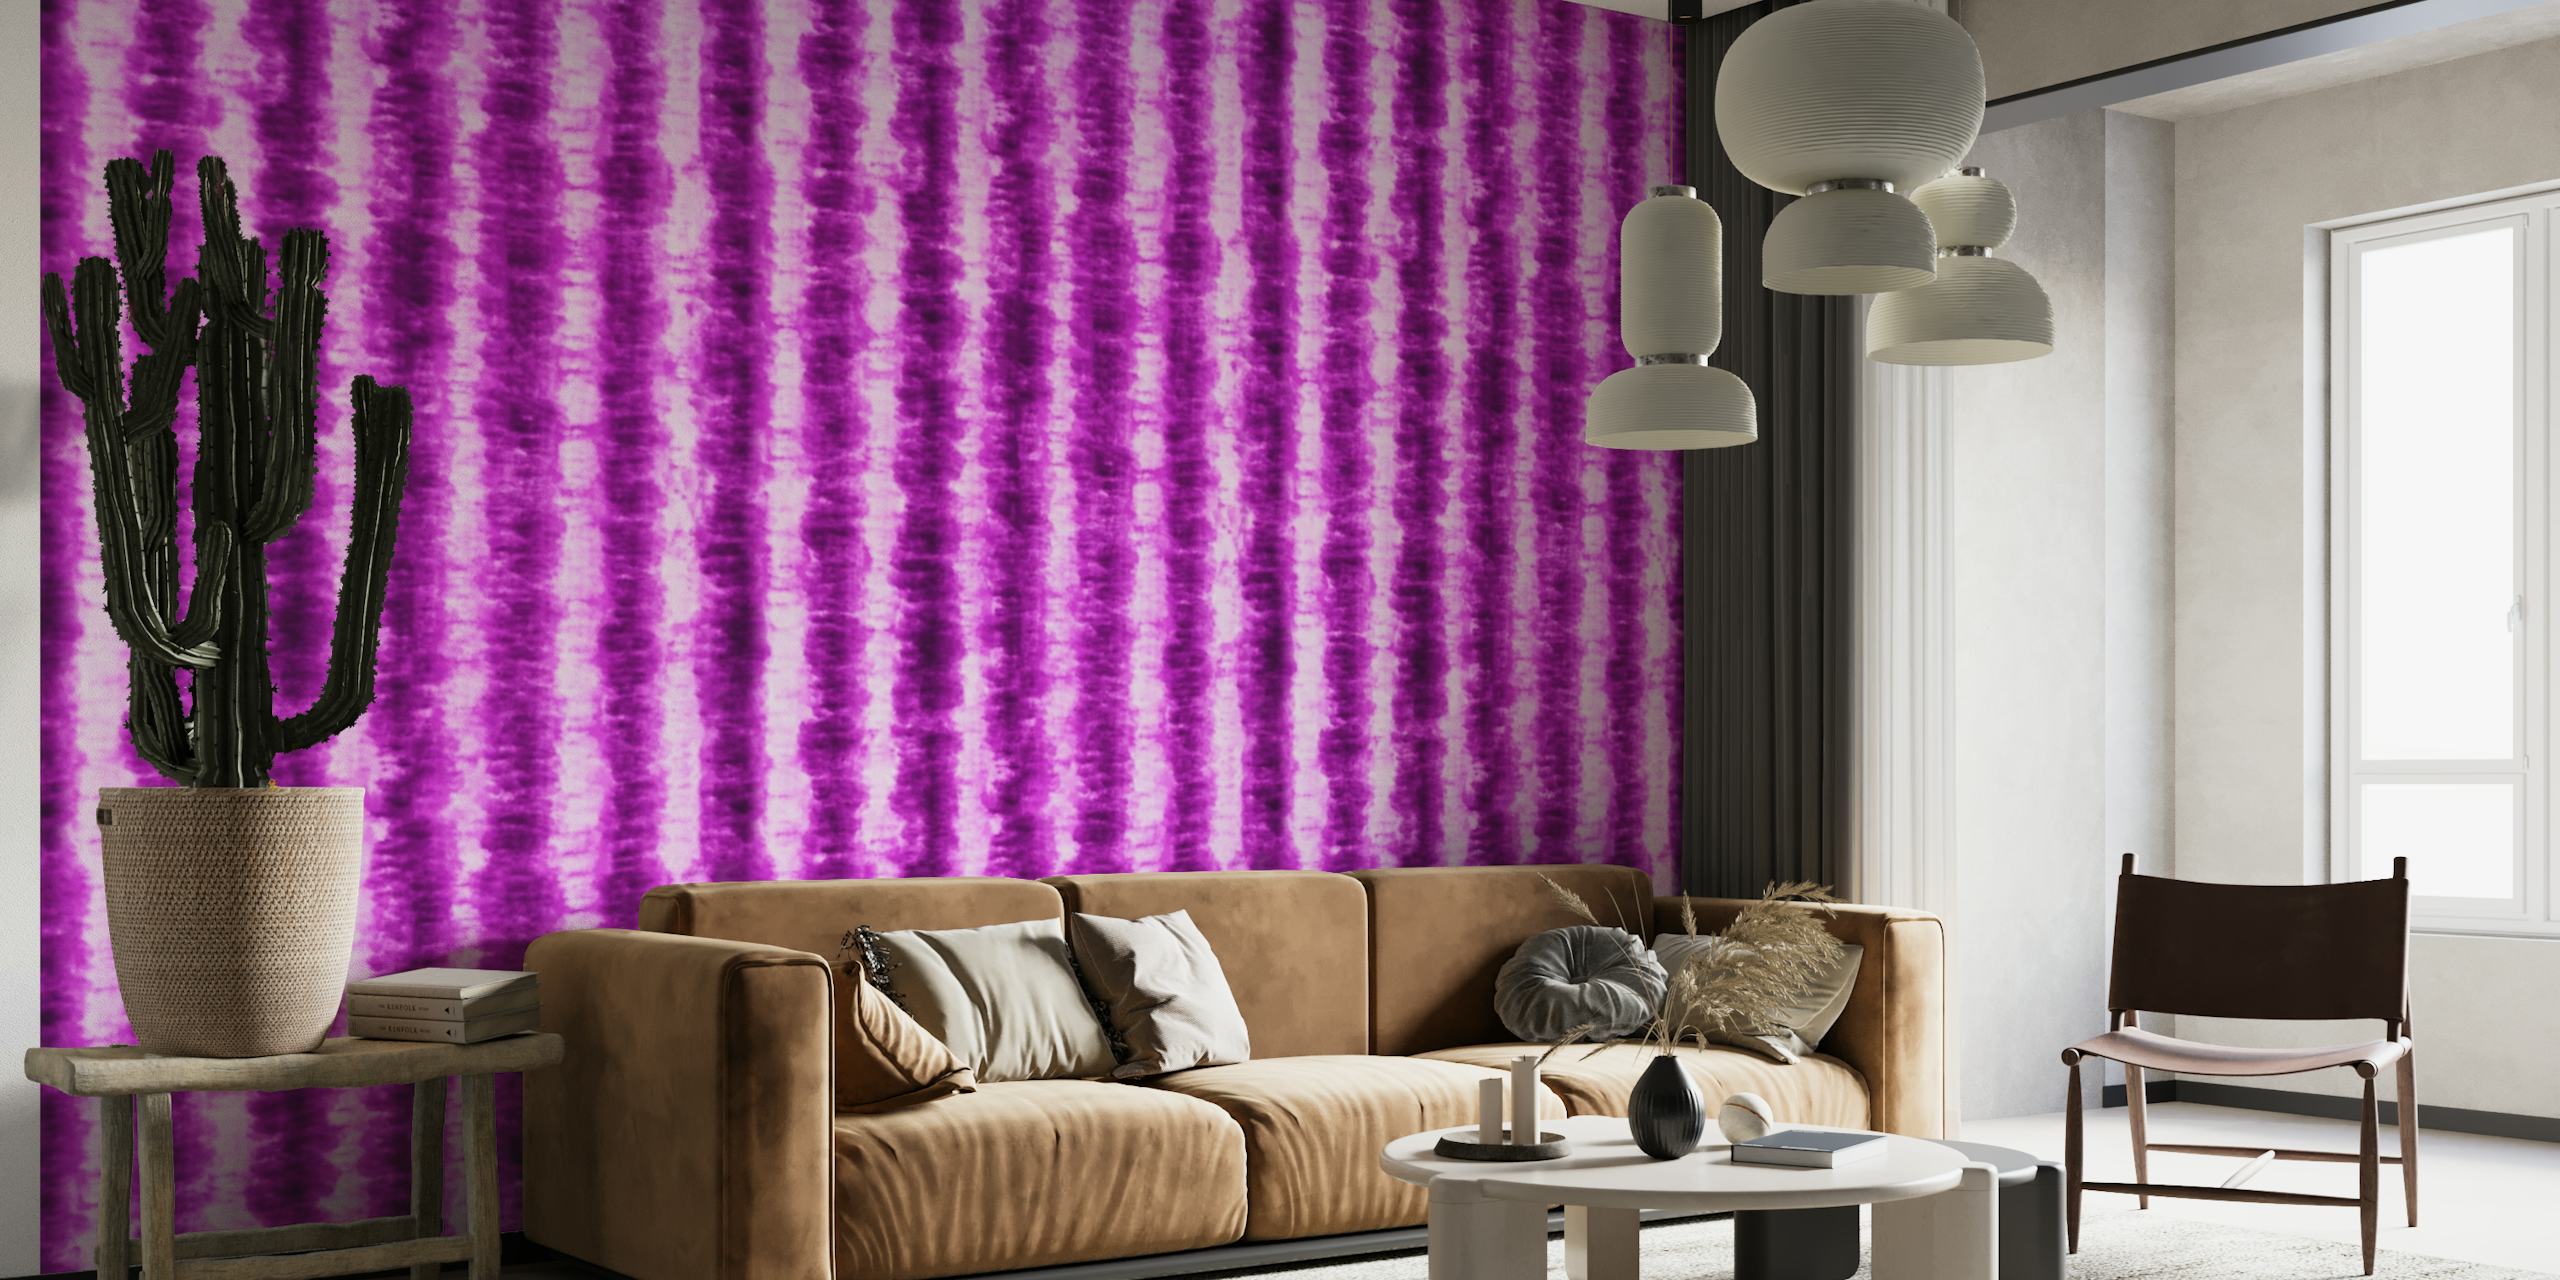 Mural de parede com padrão tie-dye roxo vibrante da Happywall, ideal para decoração de casa eclética.